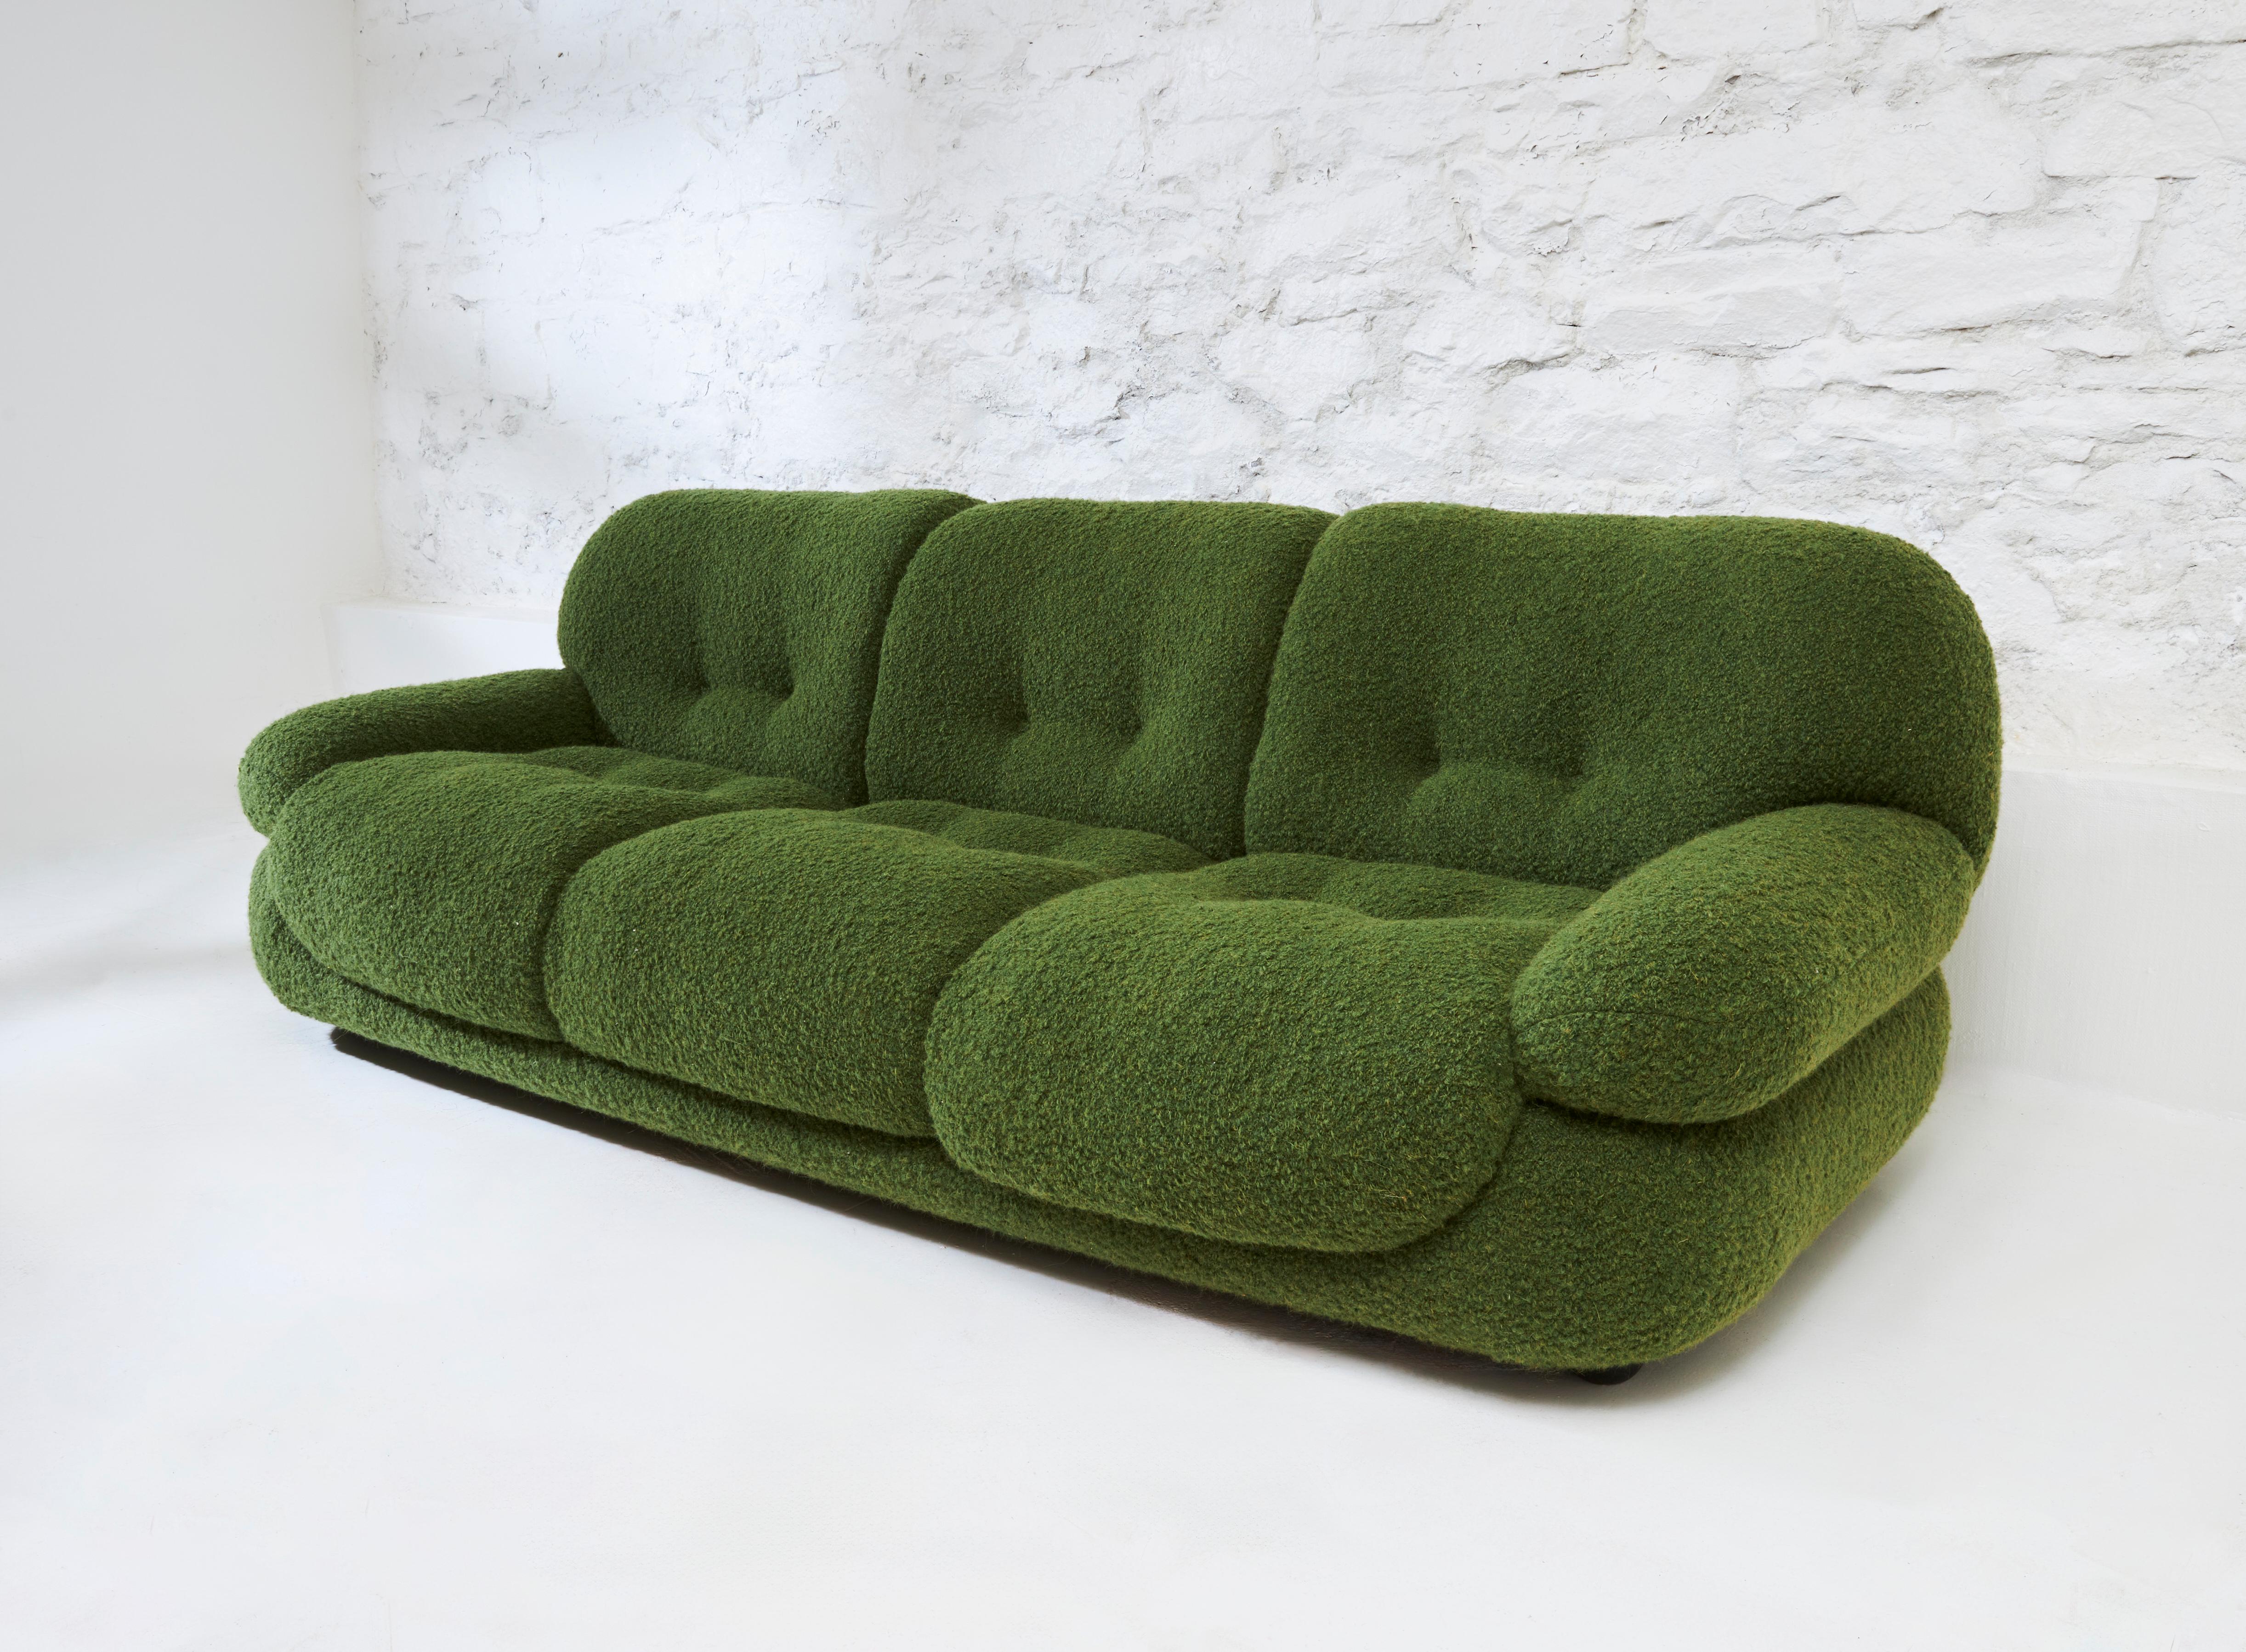 Ein geräumiges Loungesofa, entworfen von Sapporo für Mobil Girgi in Italien in den 1970er Jahren. Dieses große und stilvolle Sofa lädt mit seinen flauschigen Kissen und einladenden runden Formen zum Verweilen ein. Er wurde mit dem Gedanken an